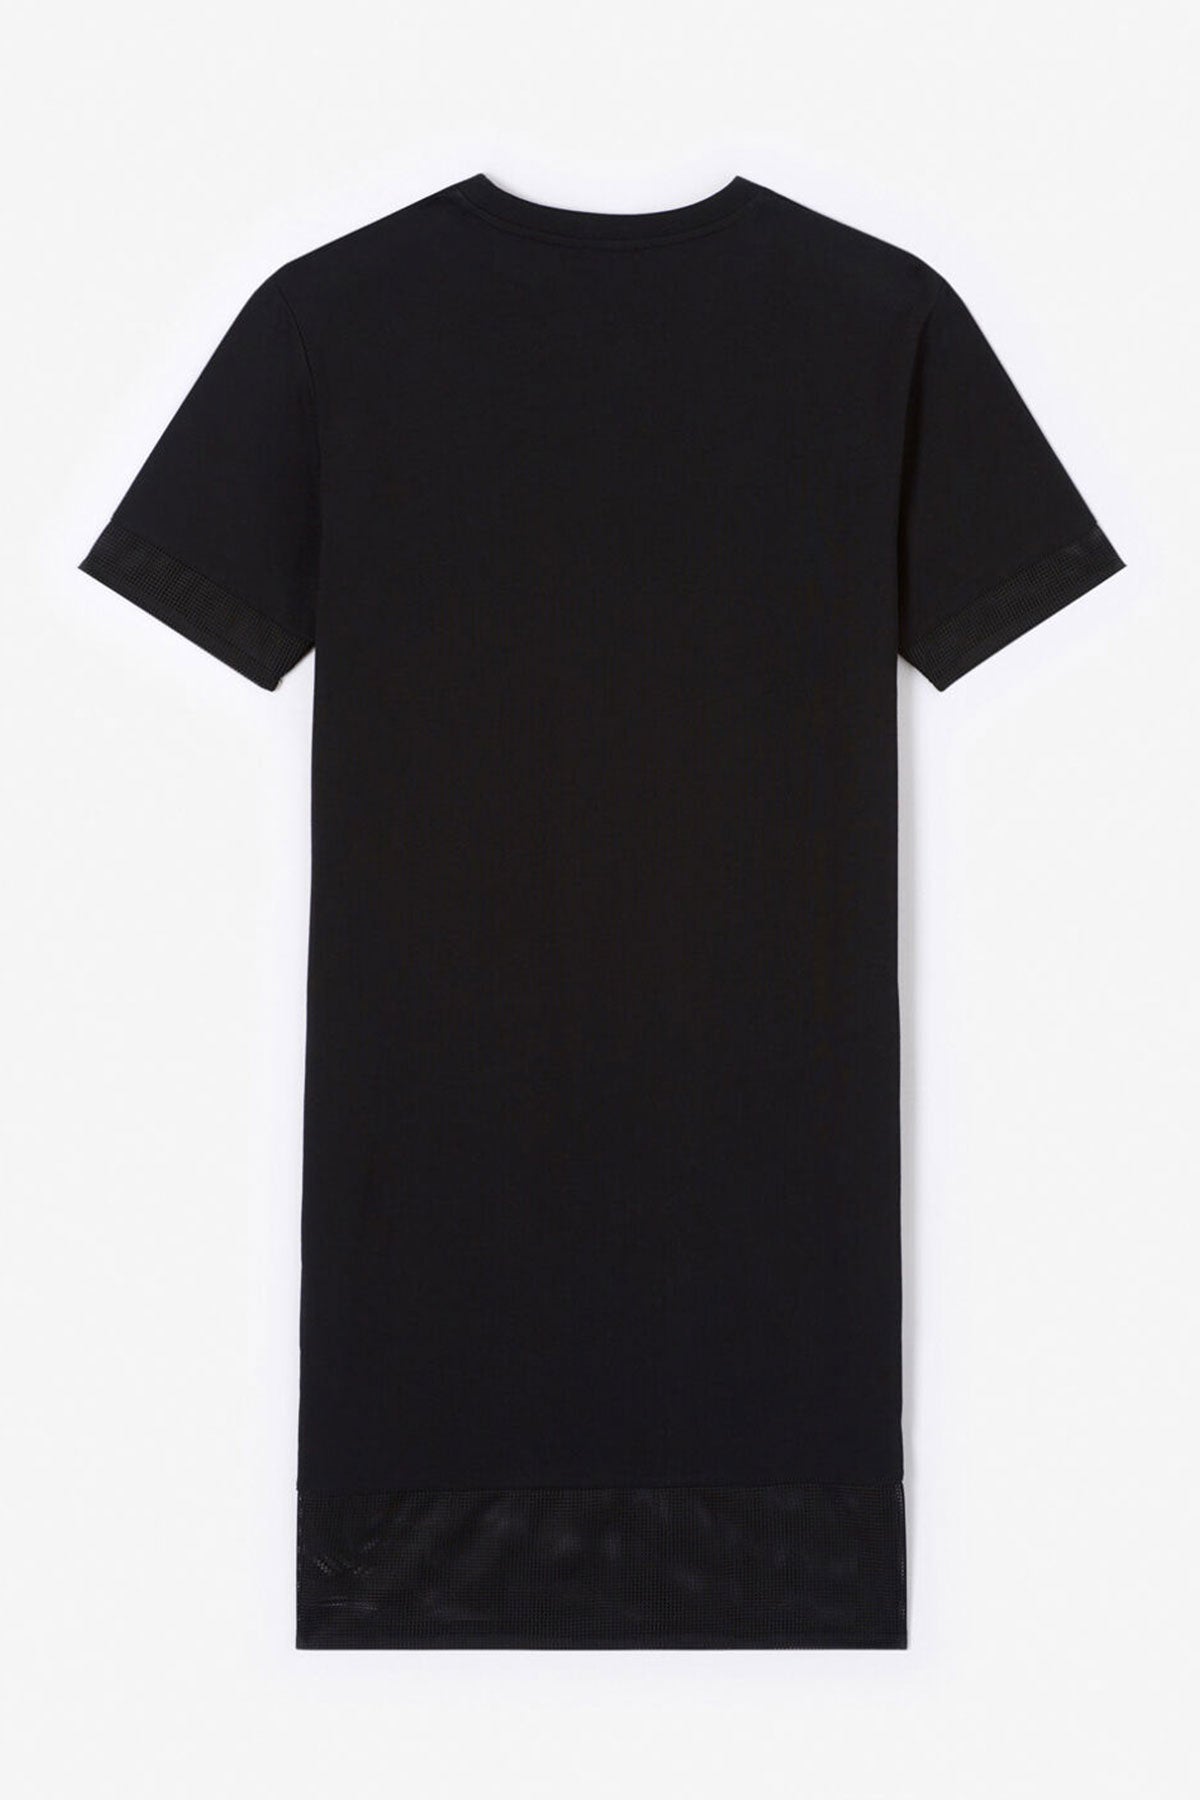 Kenzo T-shirt Elbise-Libas Trendy Fashion Store